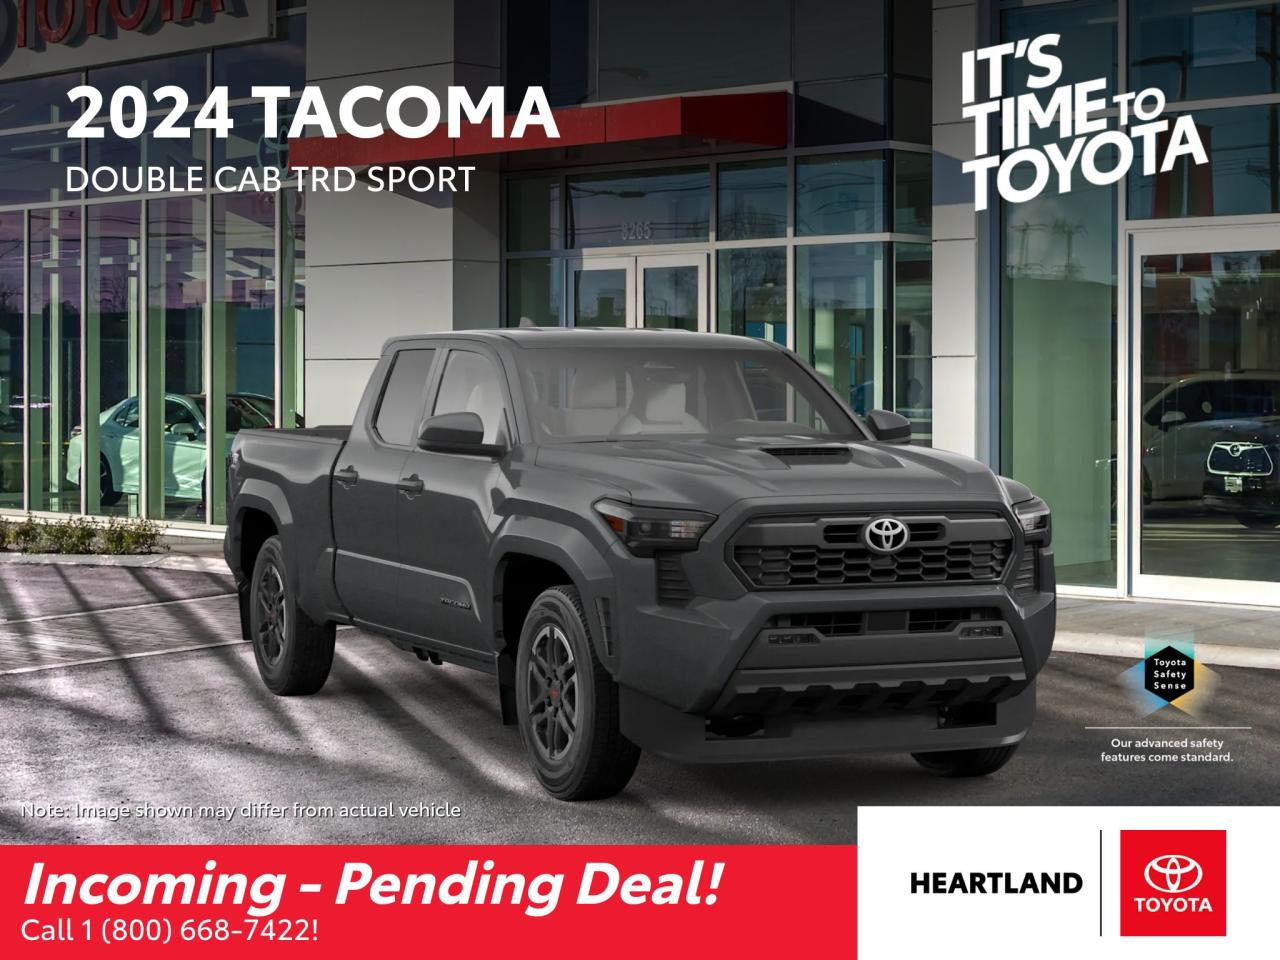 2024 Toyota Tacoma 4X4 Double Cab Photo